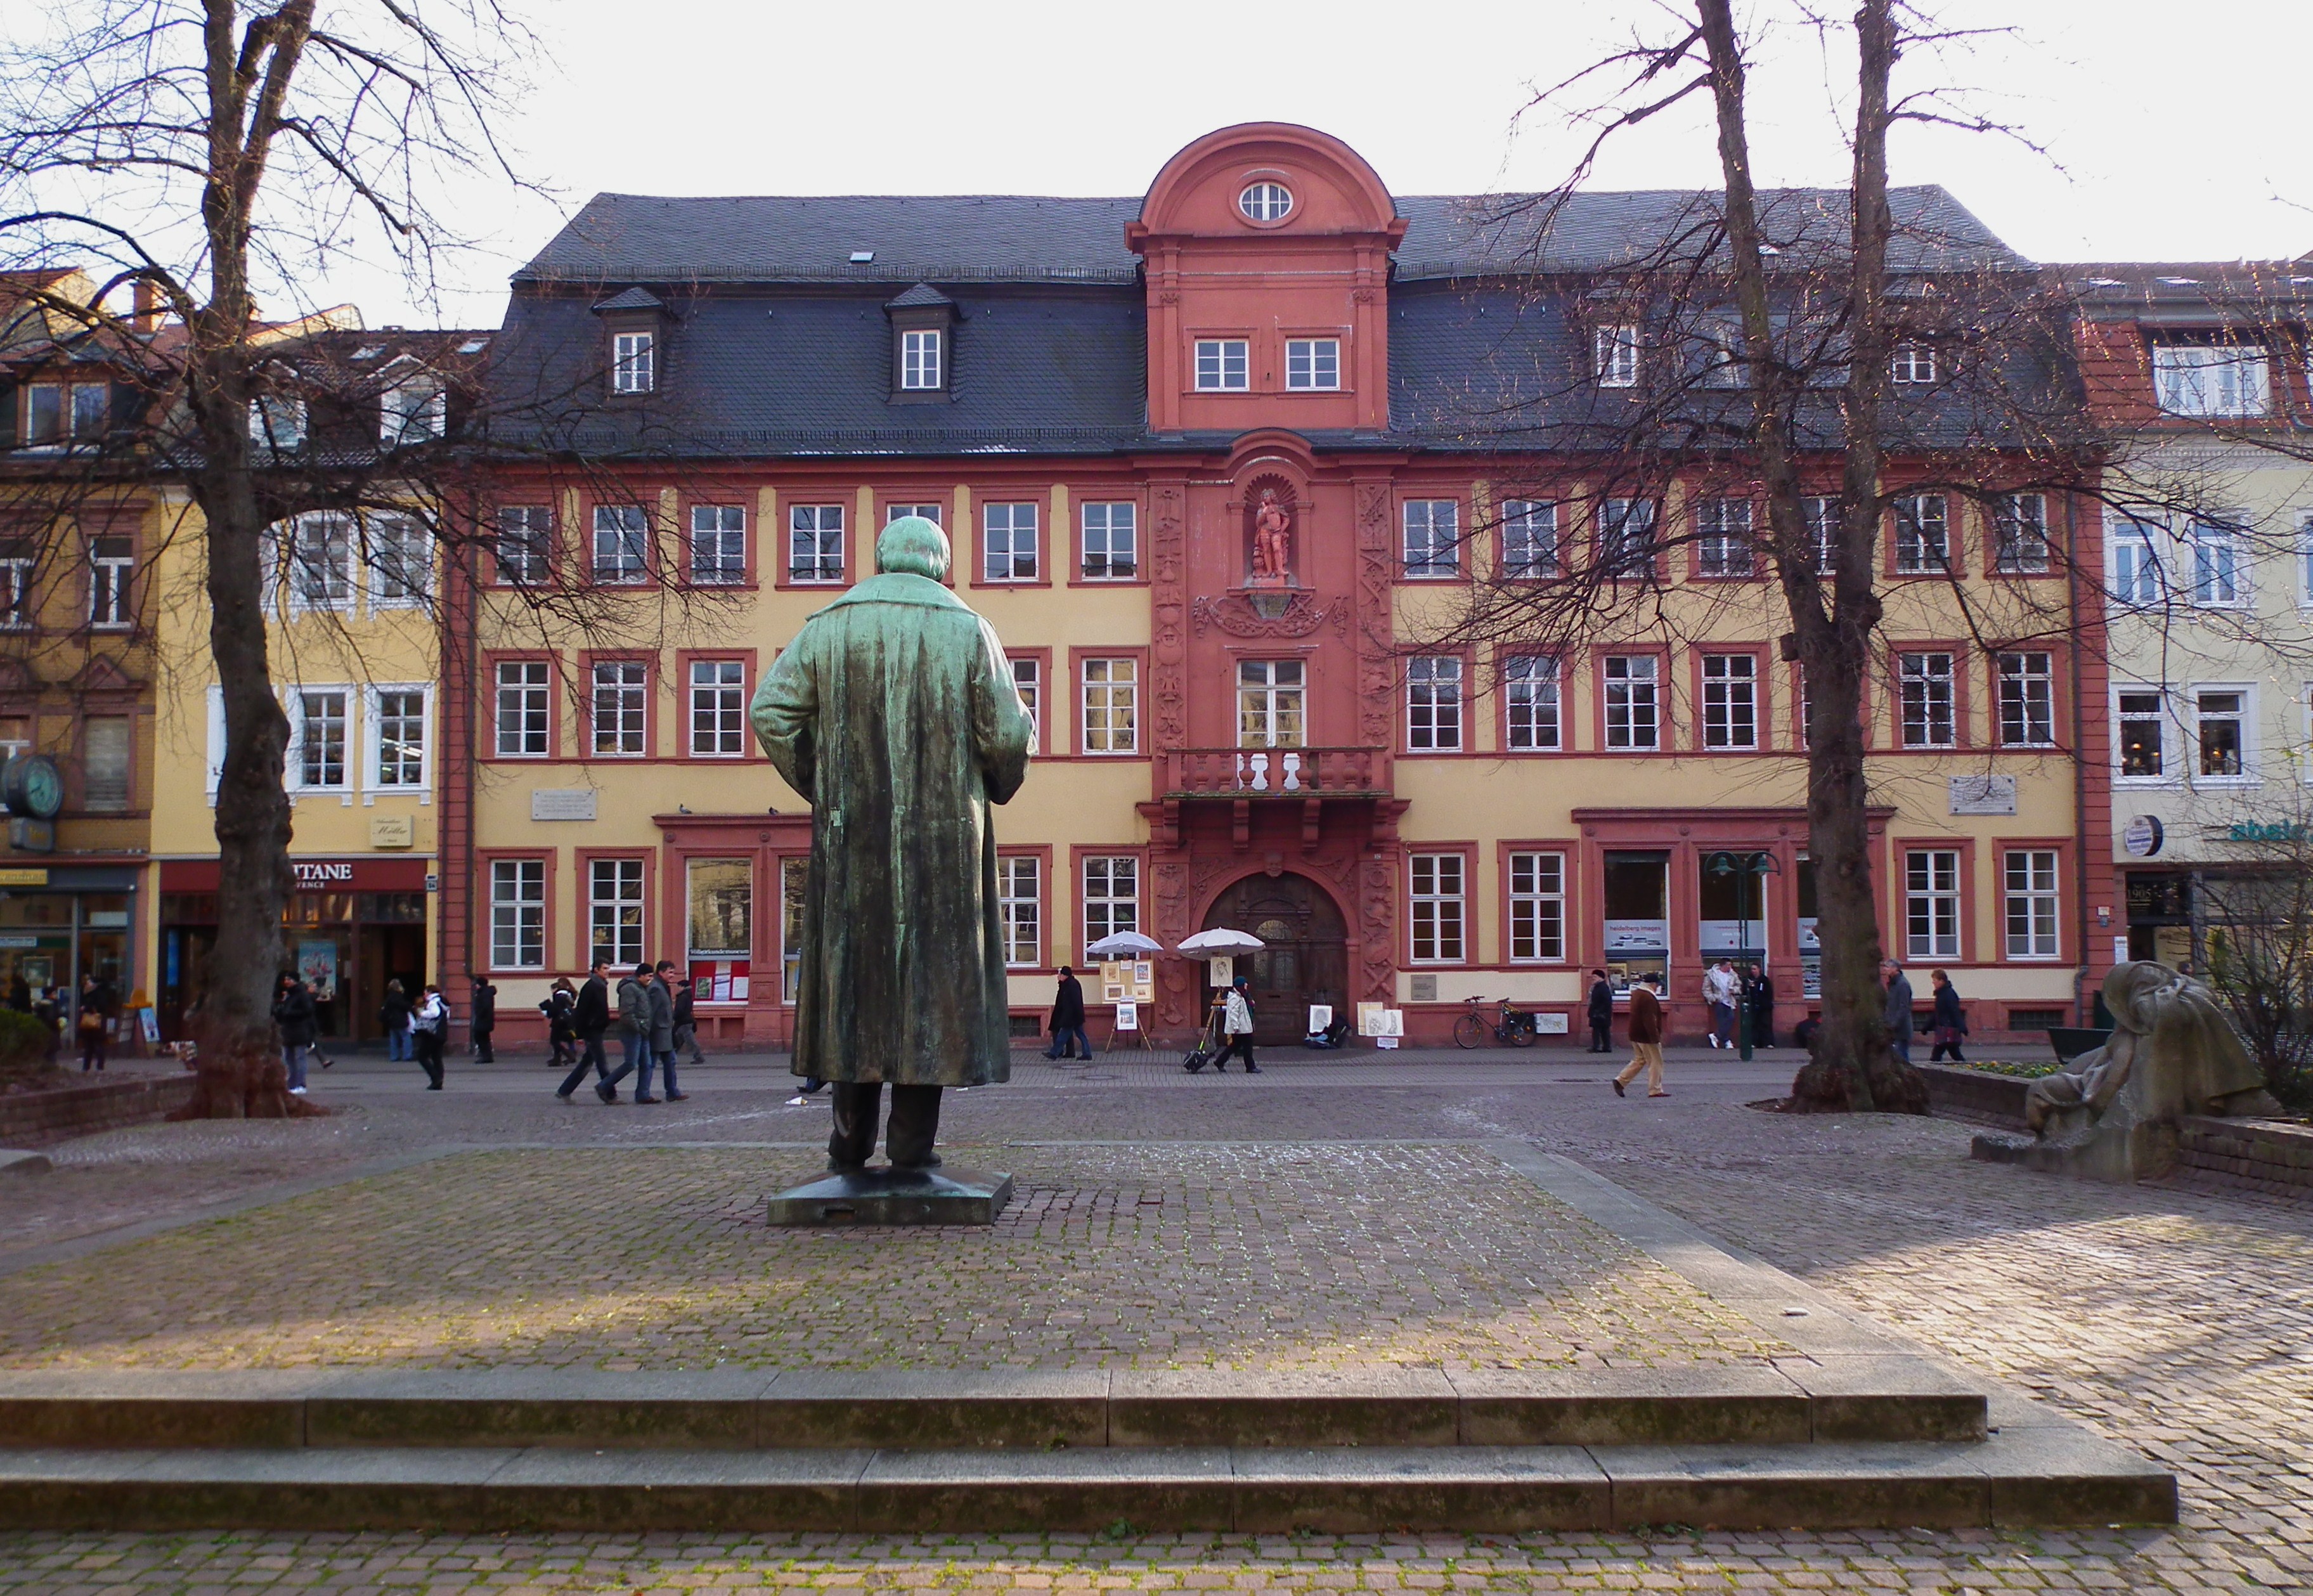 Haus zum Riesen, davor Rückseite der Statue von Robert Wilhelm Bunsen in der Heidelberger Altstadt (...